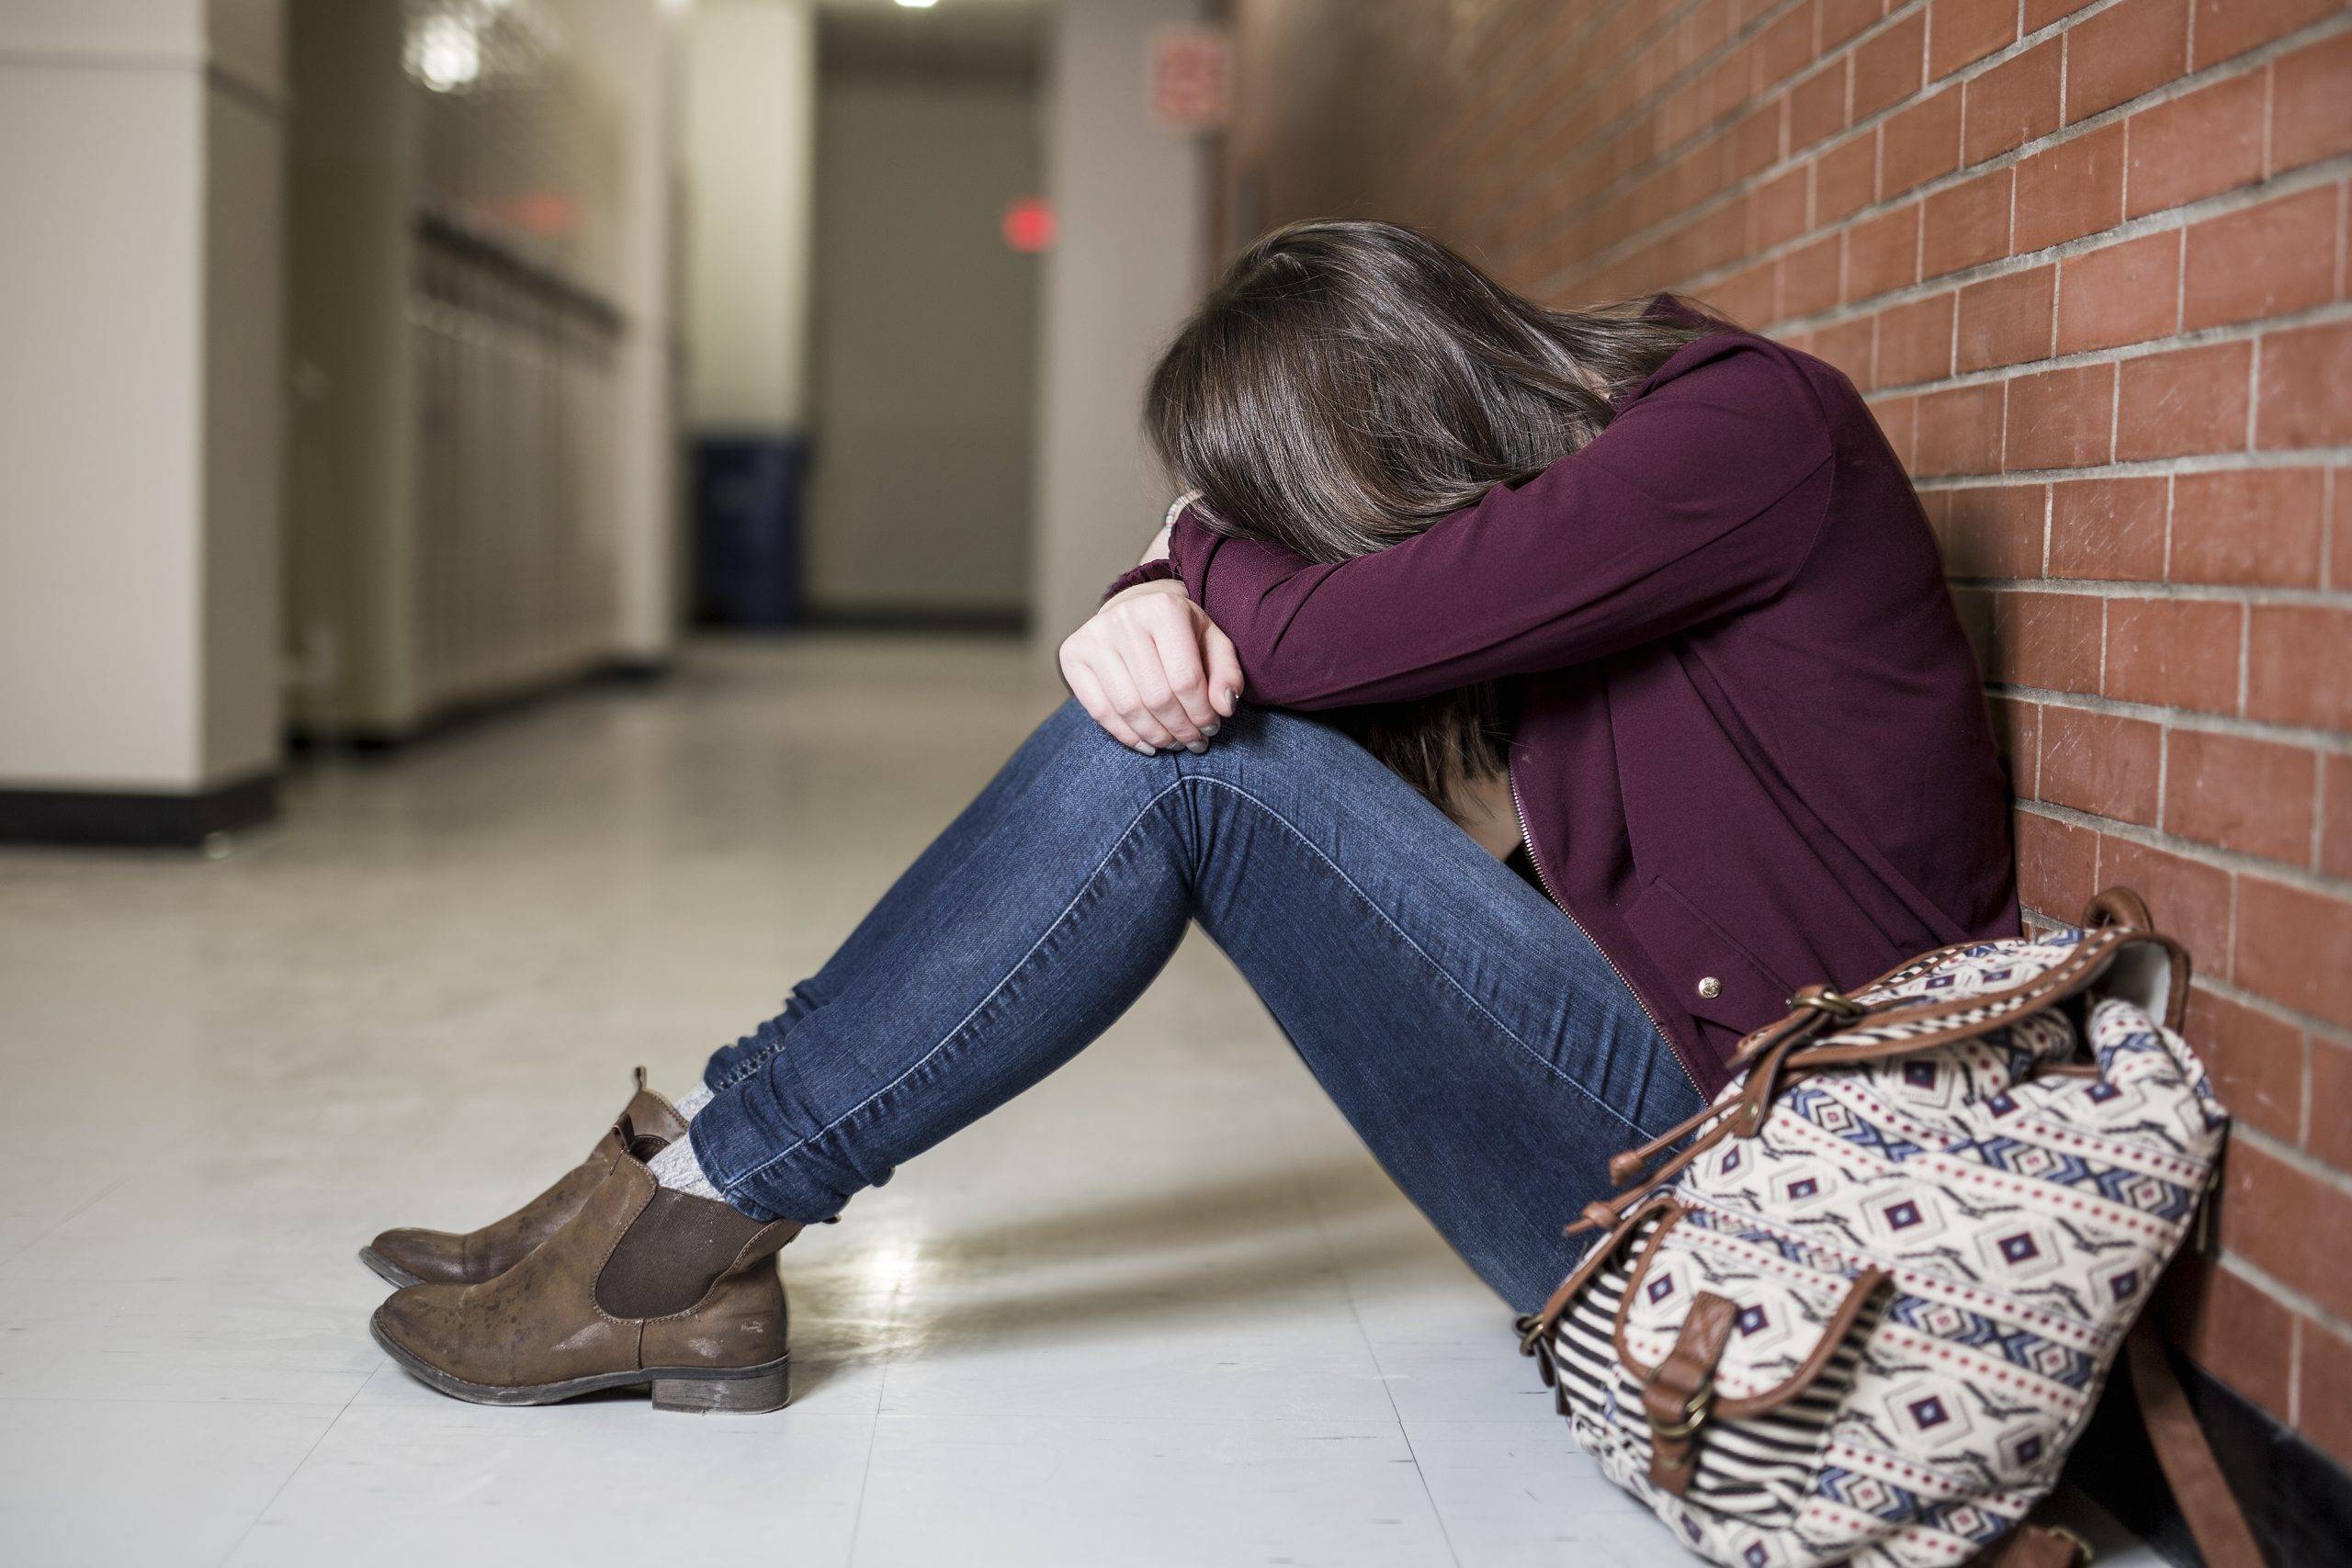 Подростковая депрессия: симптомы, факторы риска и помощь